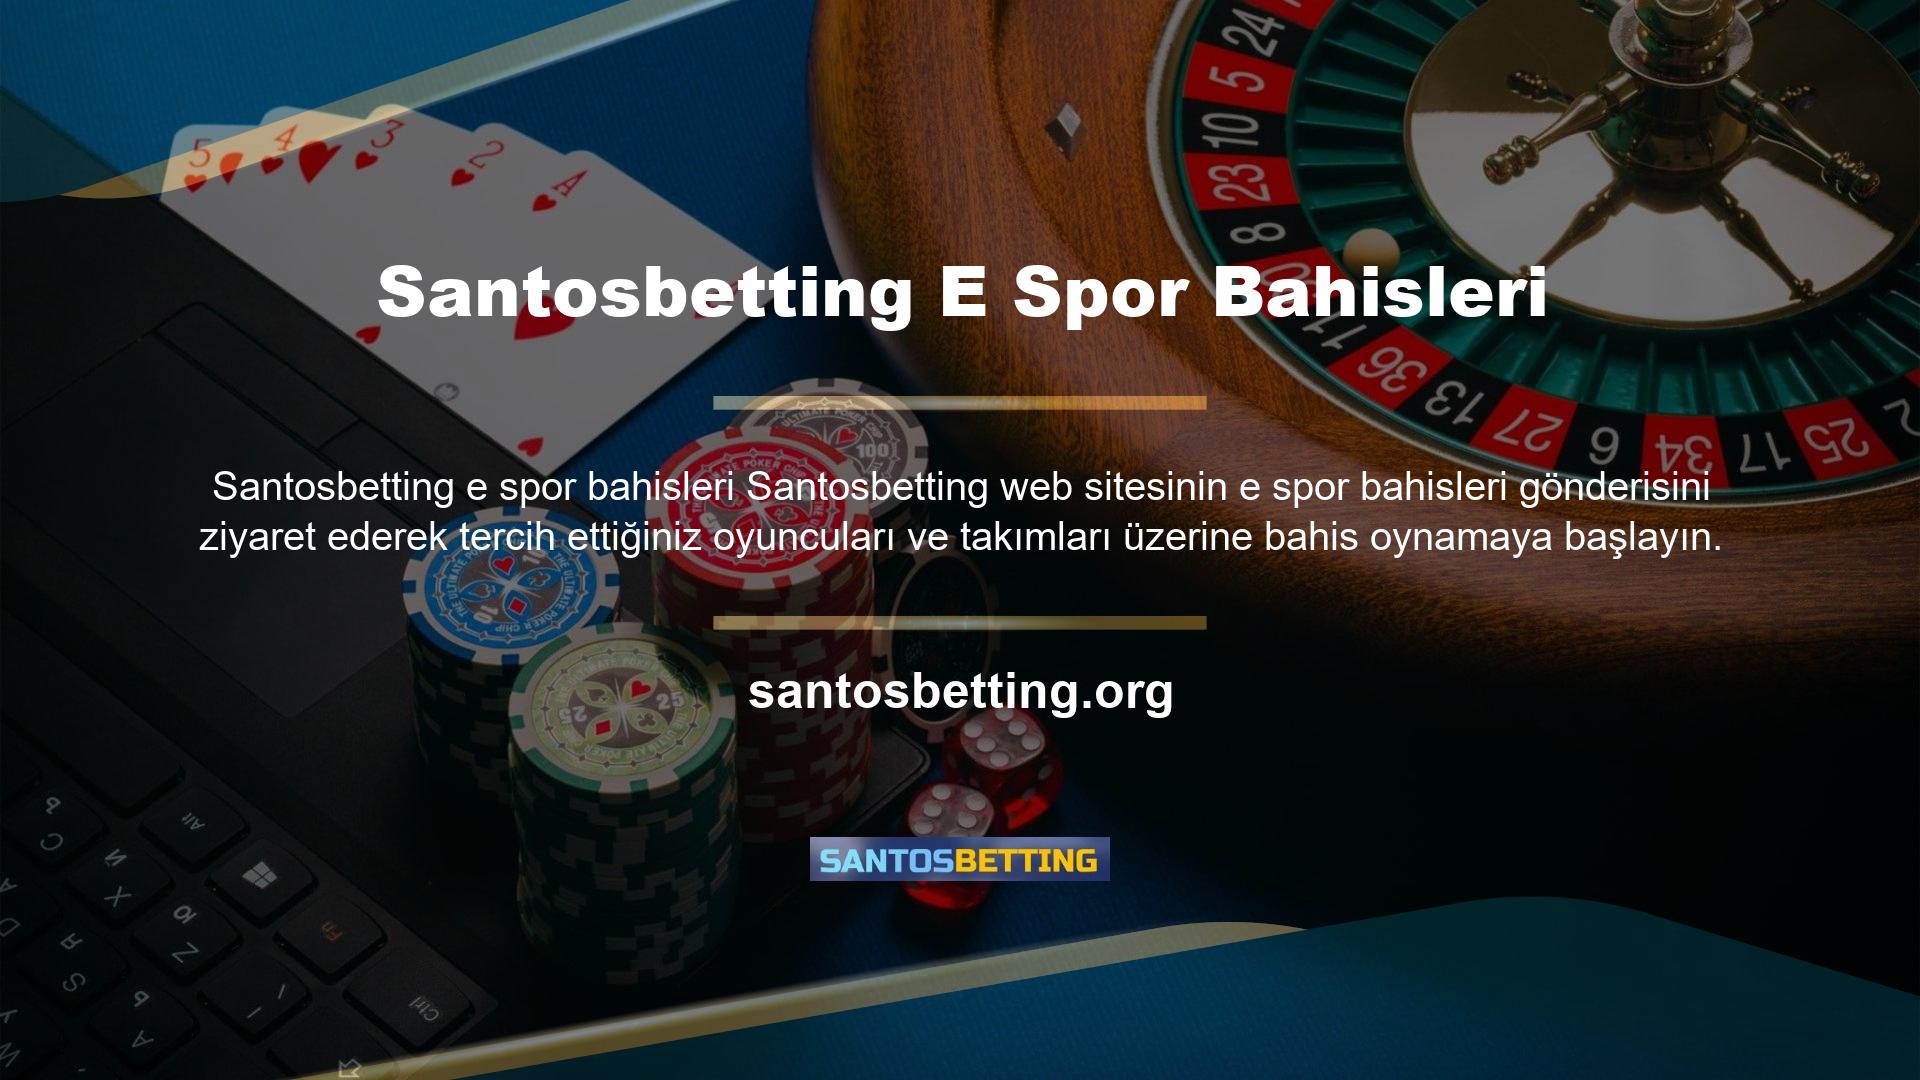 Santosbetting, çeşitli para yatırma ve çekme yöntemleri, kazançların hızlı çekilmesi ve diğer önemli e spor etkinliklerine bahis oynama ve cömert promosyonlar sunmaktadır